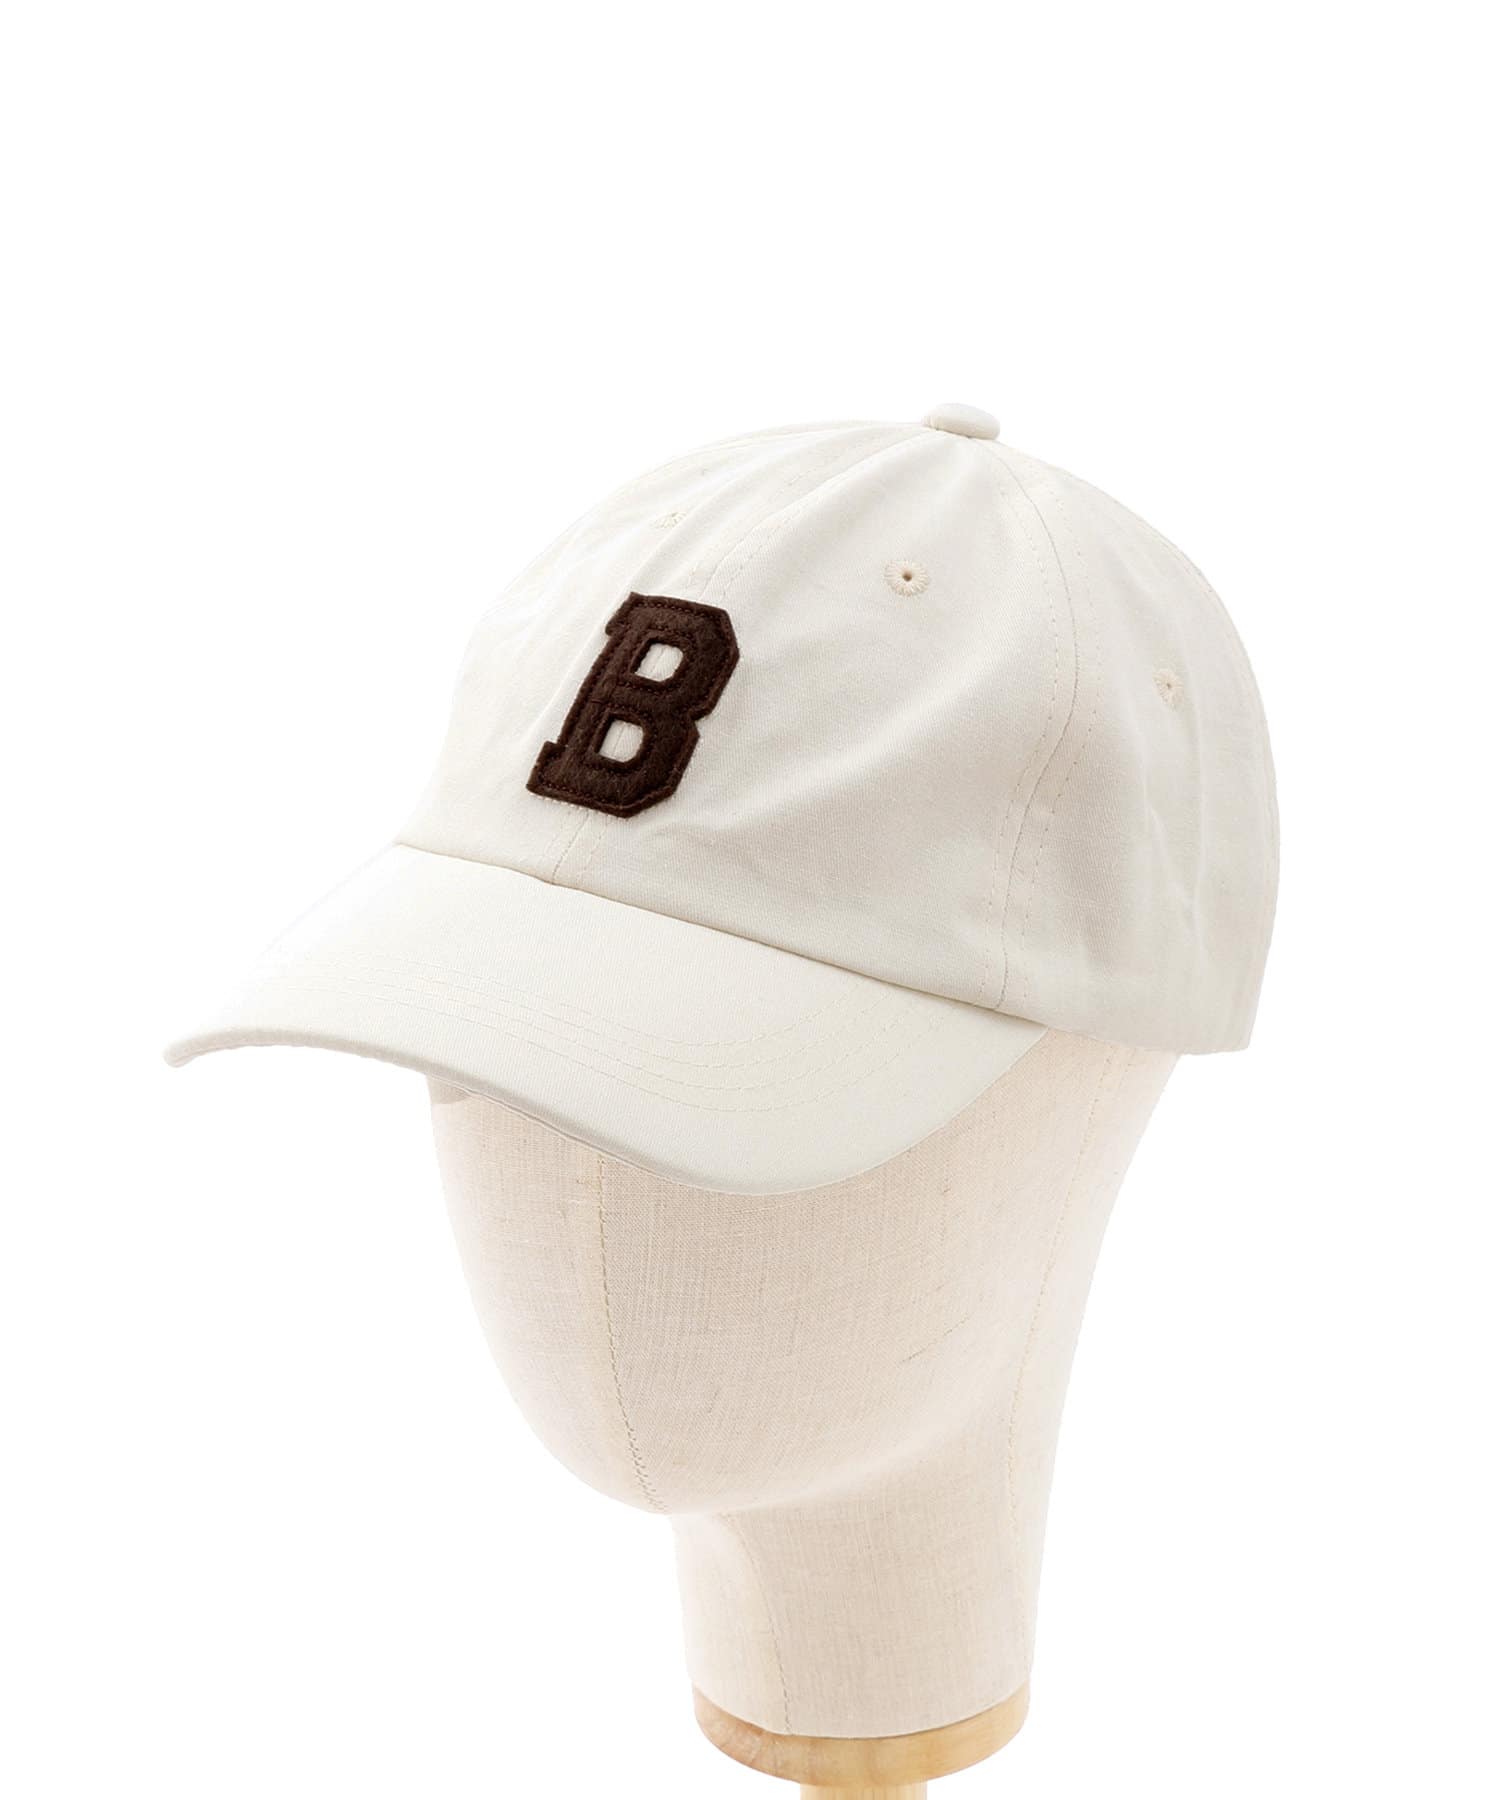 スリーラバーズ ベースボールキャップ 限定色 - 帽子